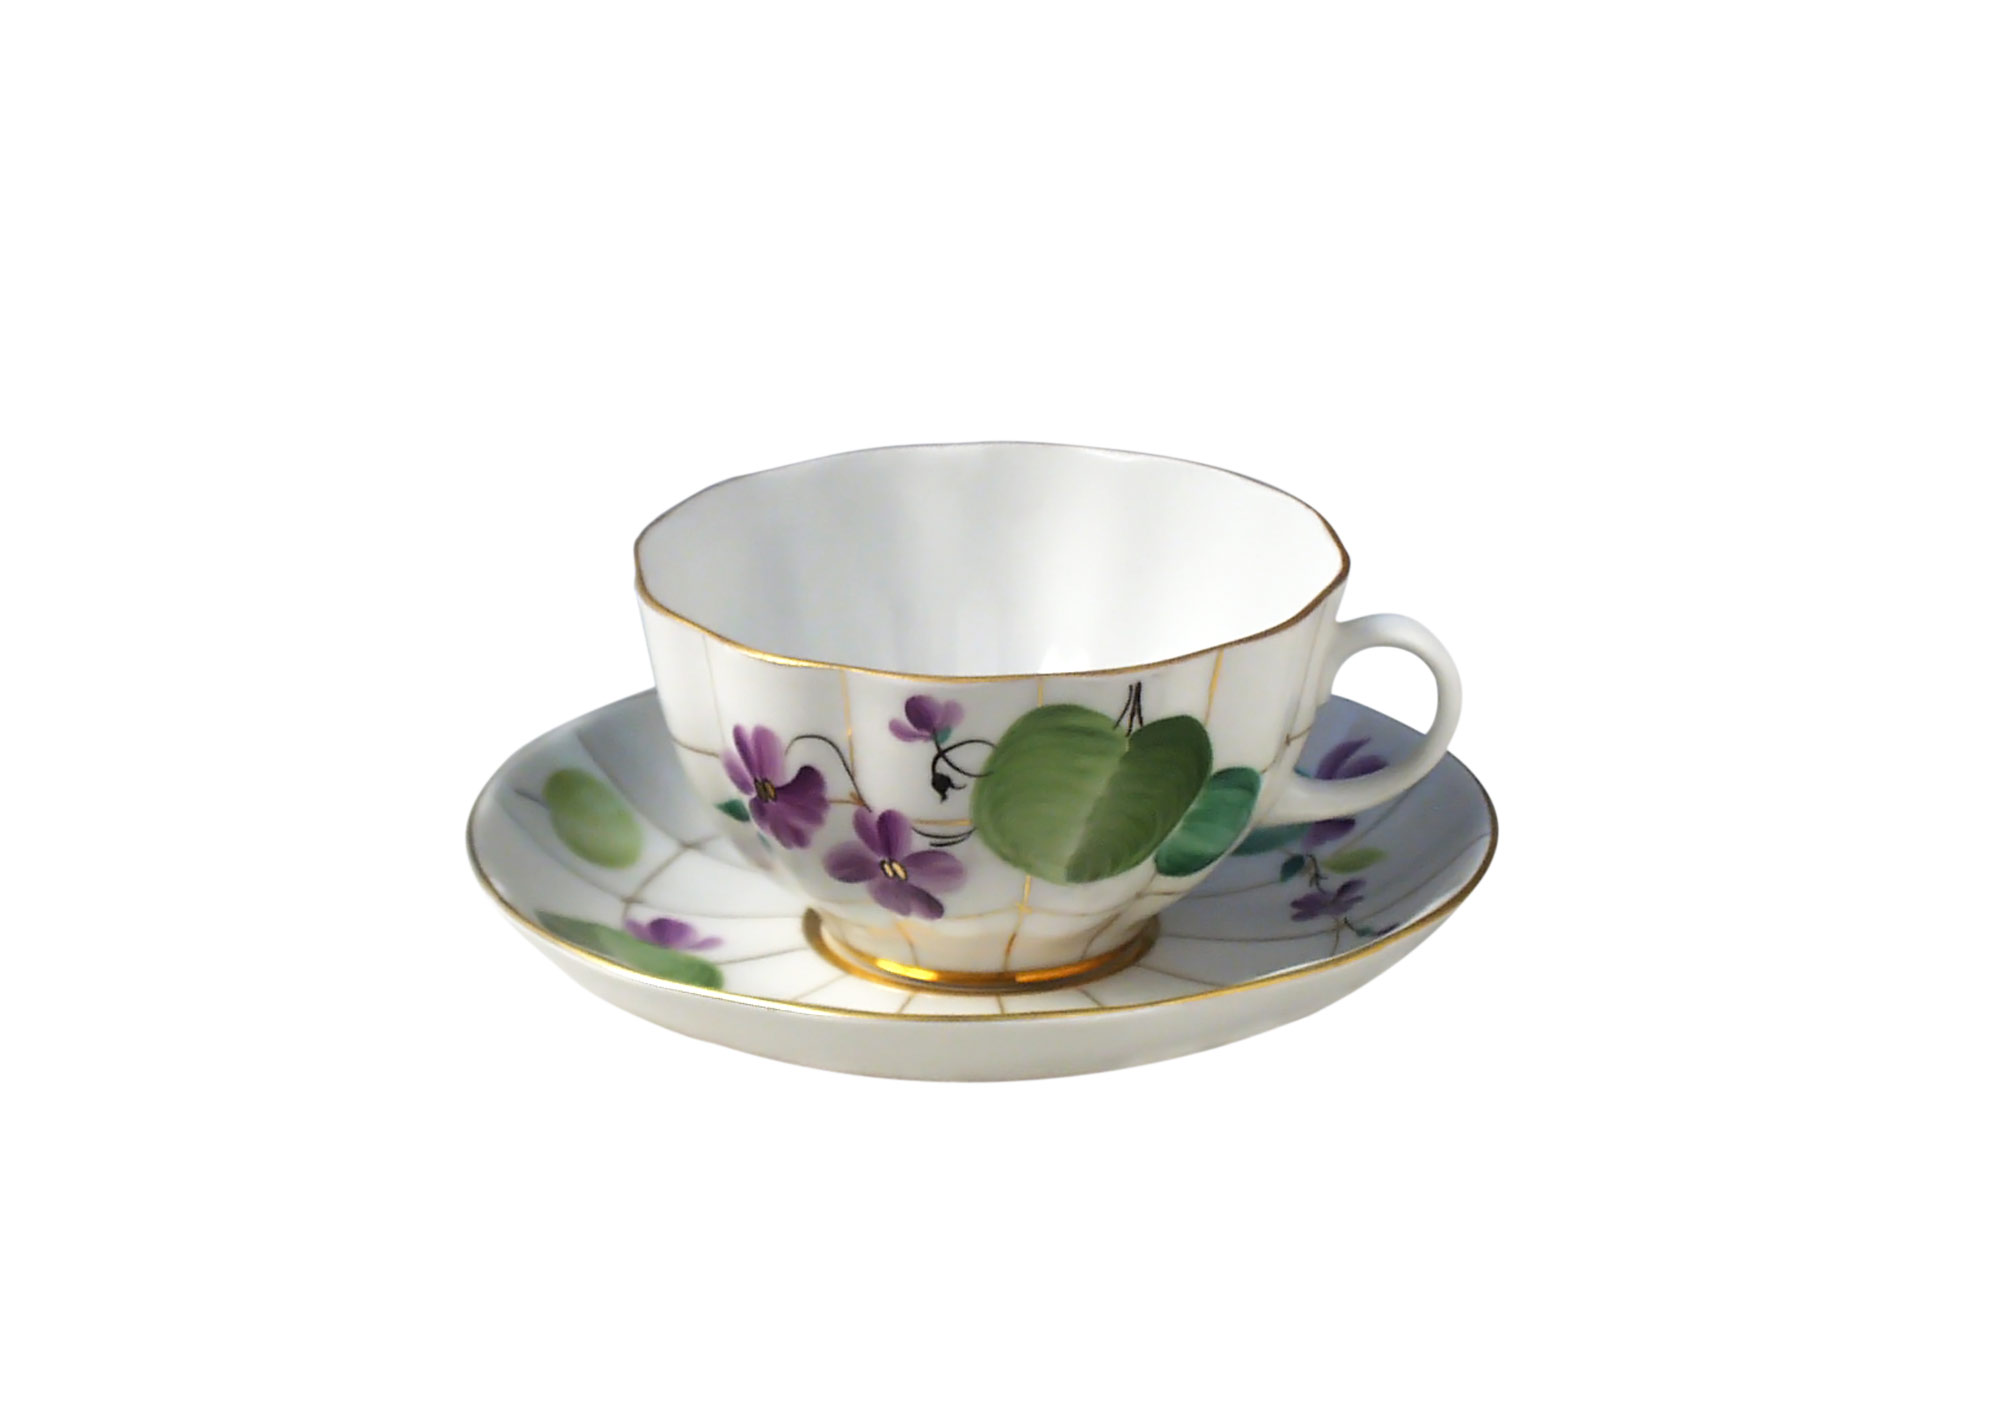 Buy Forest Violet Porcelain Cup NO SAUCER at GoldenCockerel.com